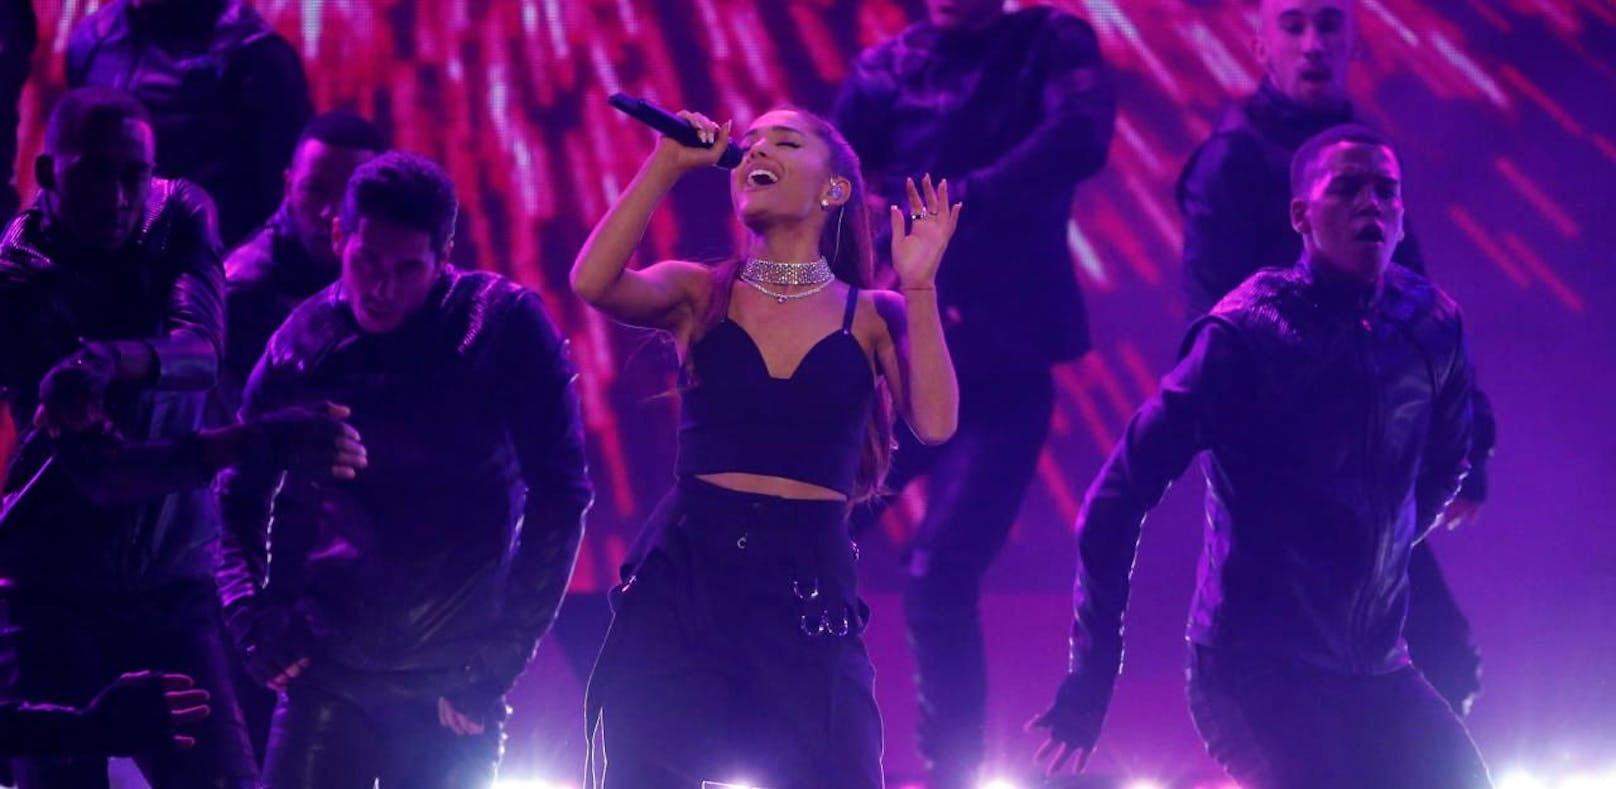 Anschlagsdrohung gegen Konzert von Ariana Grande